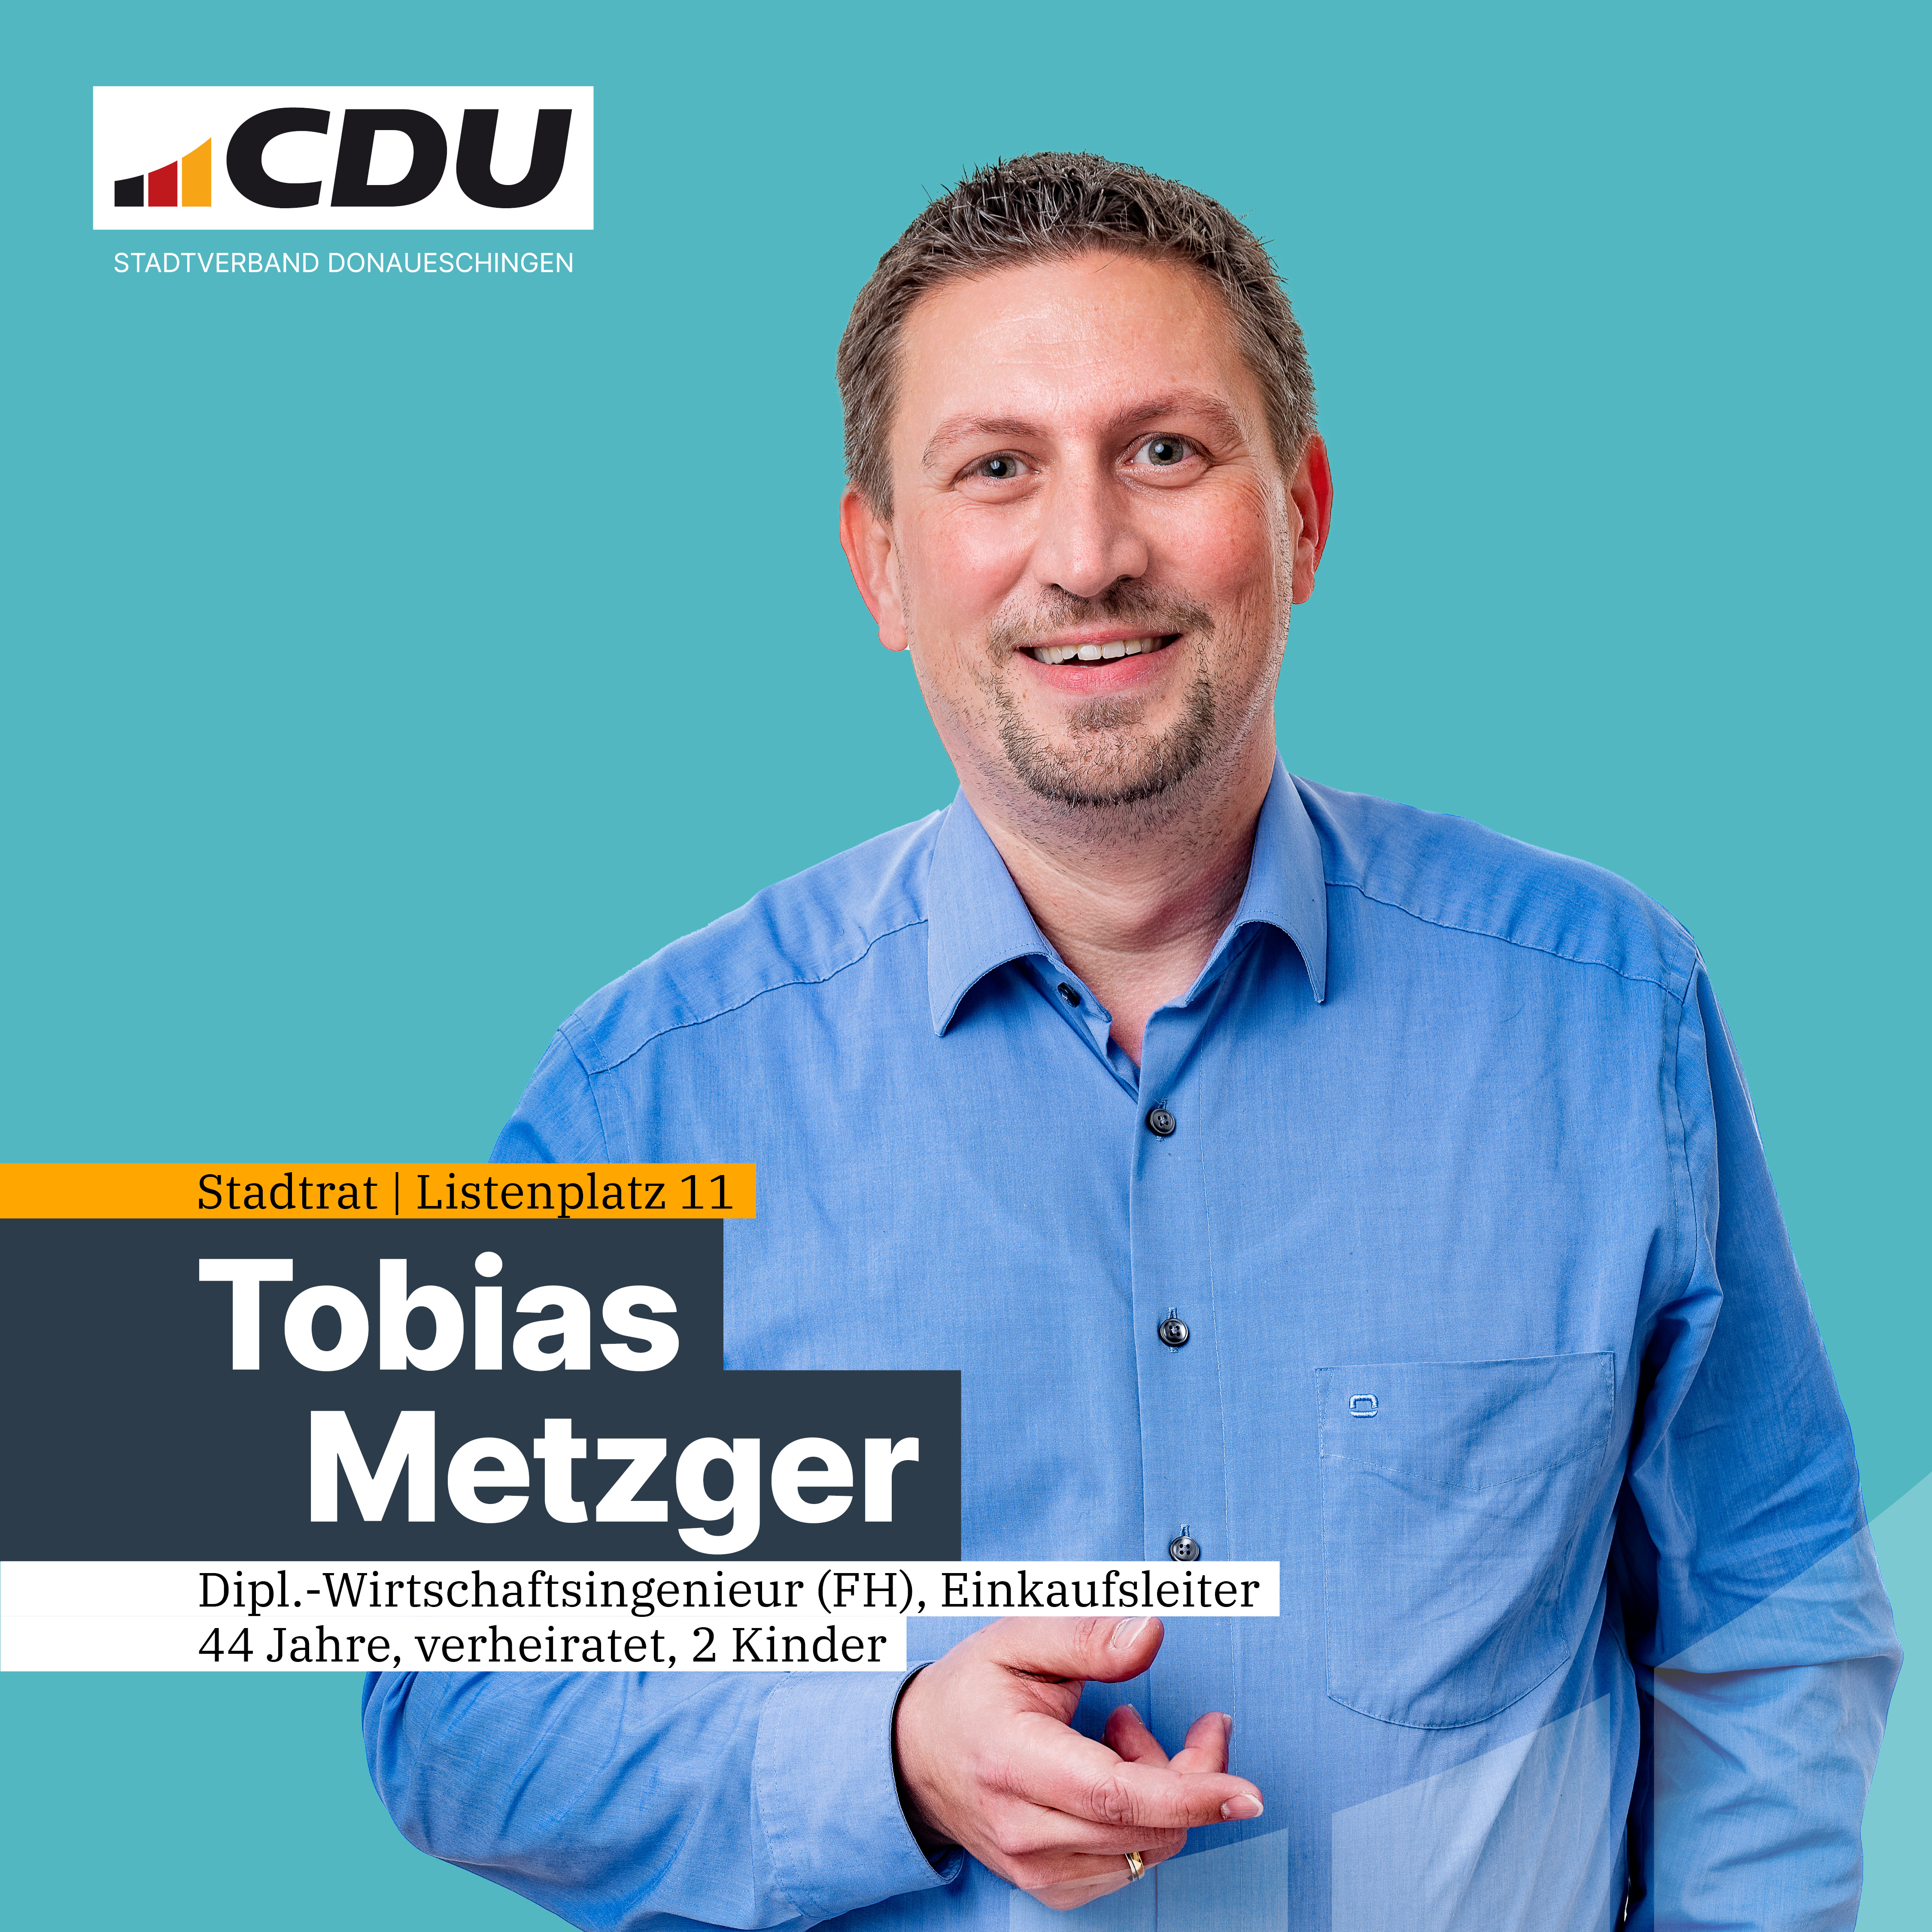  Tobias Metzger